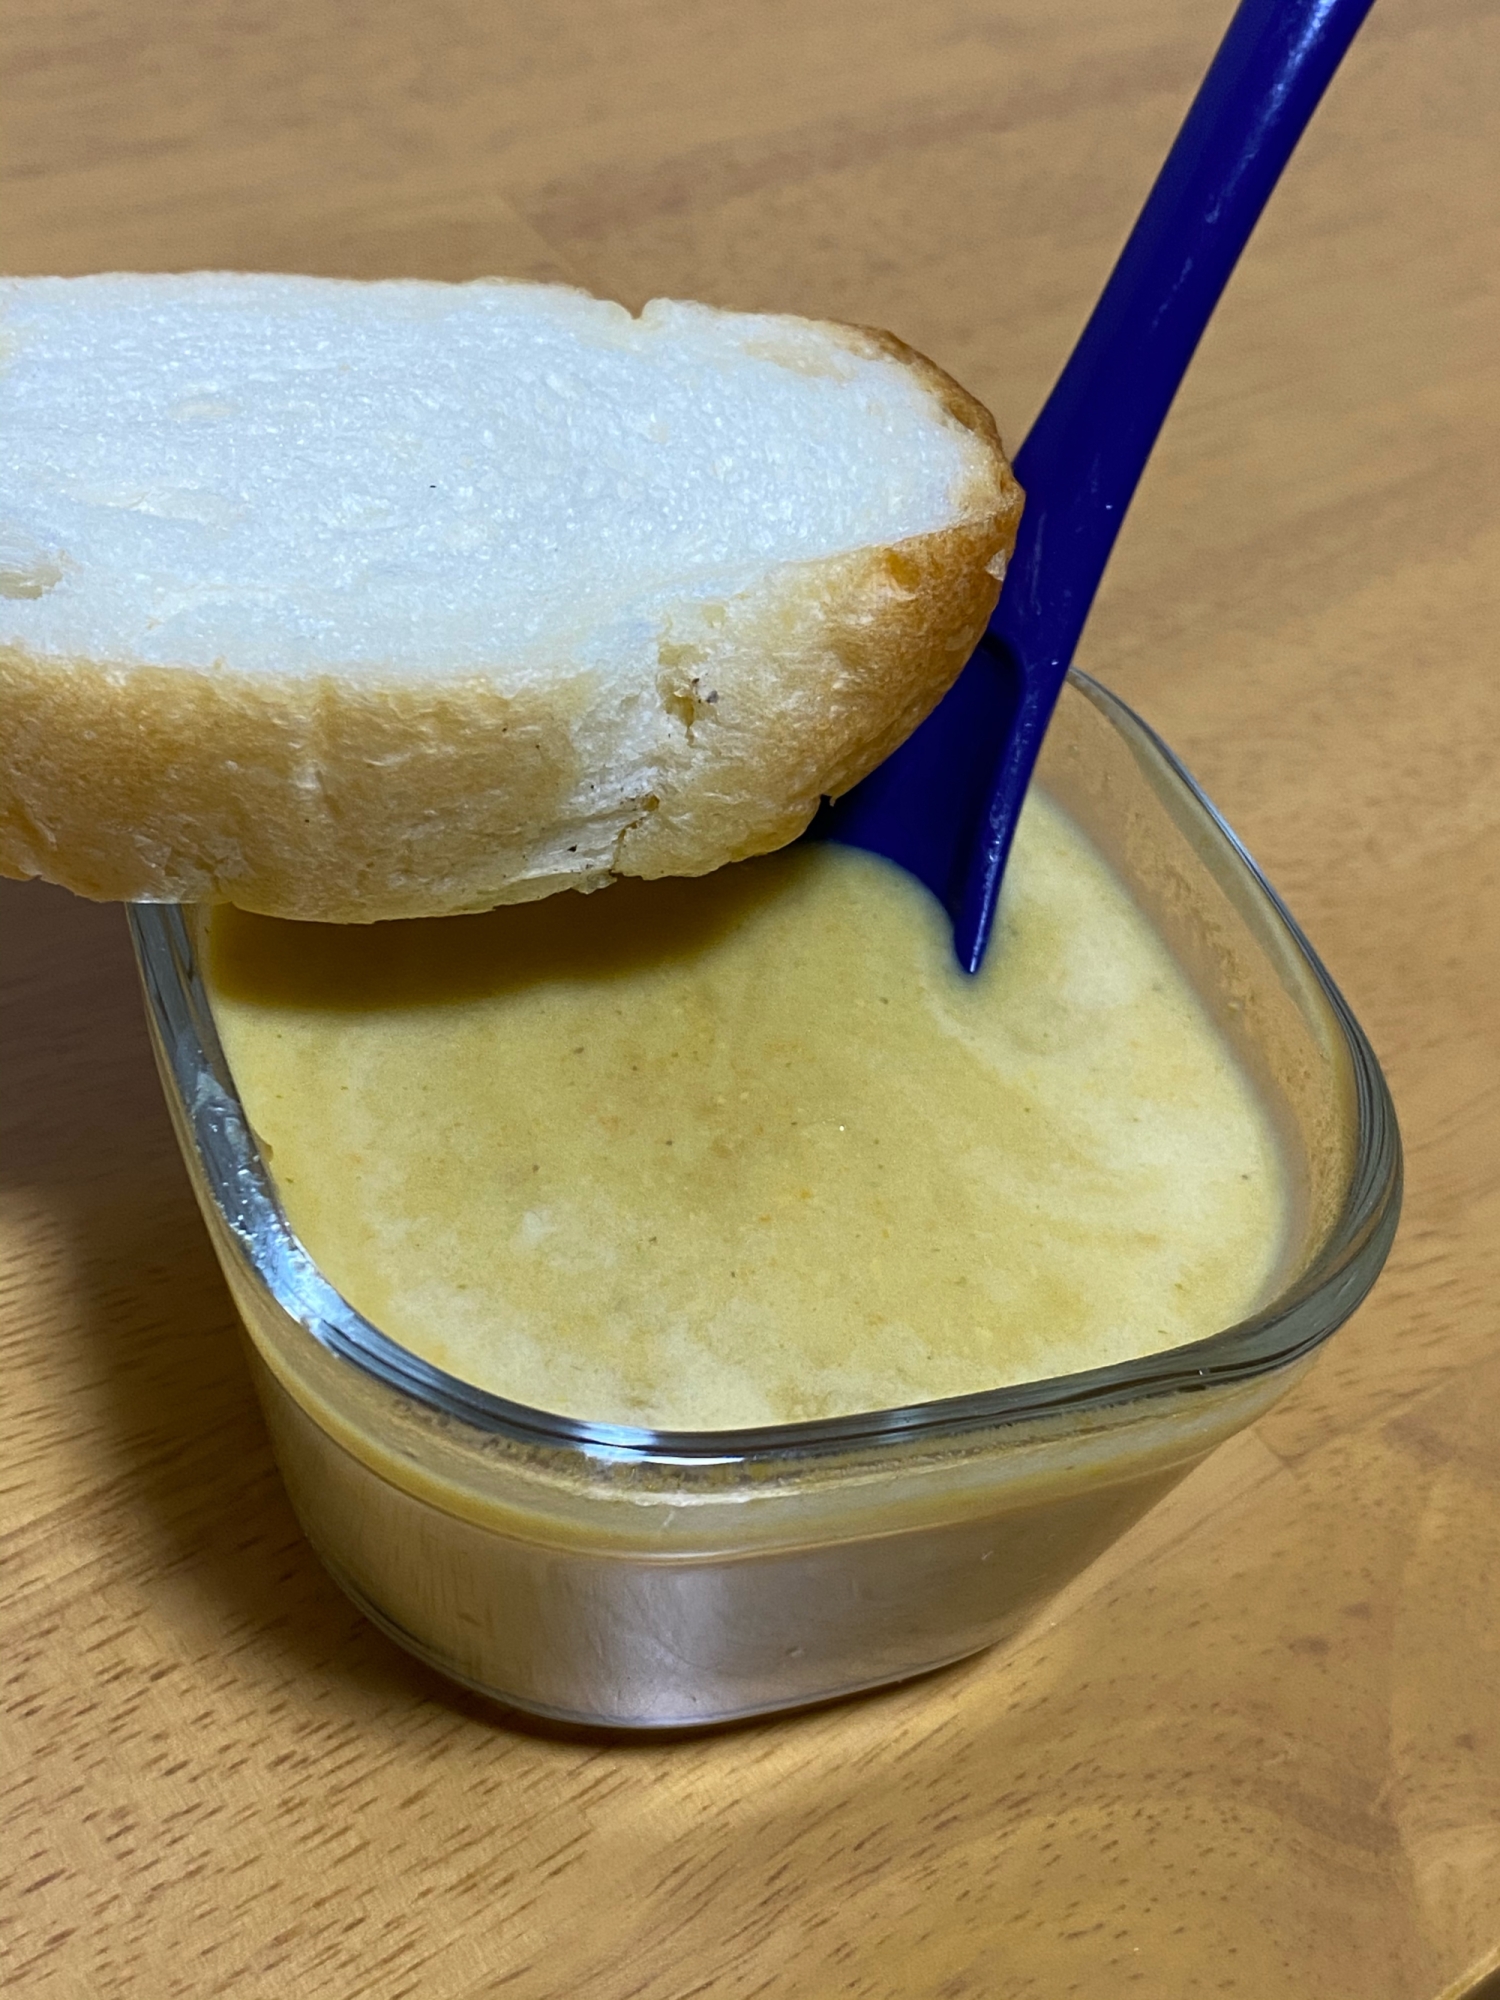 パンにつけて食べるコーンスープ*･゜ﾟ･*:.｡